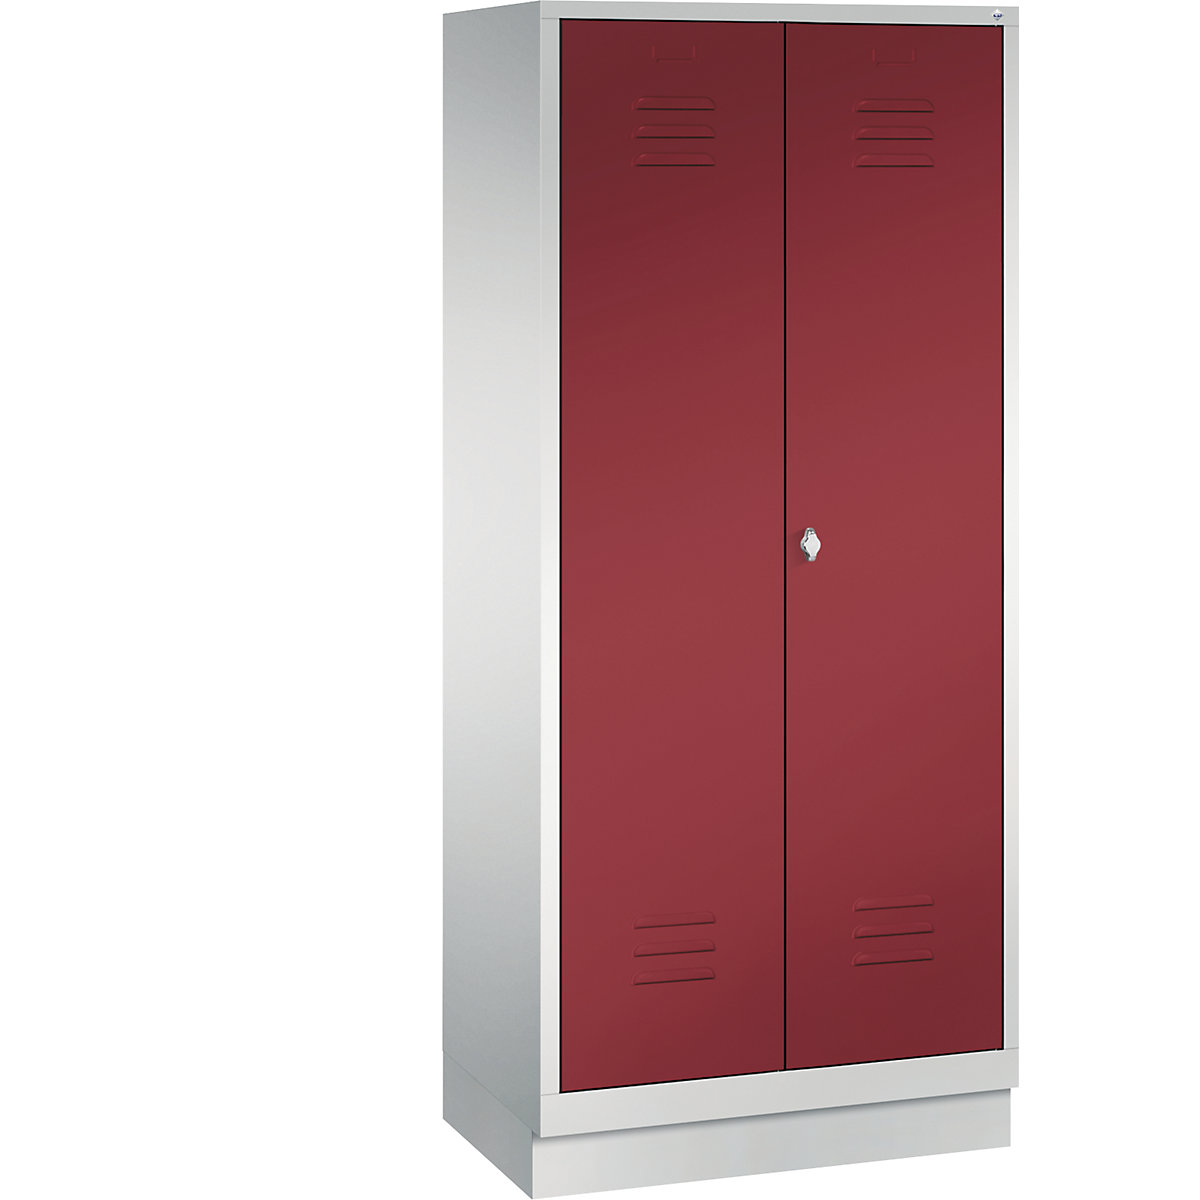 CLASSIC úložná skriňa so soklom, oproti sebe sa zatvárajúce dvere – C+P, 2 boxy, šírka boxu 400 mm, svetlošedá / rubínová červená-10